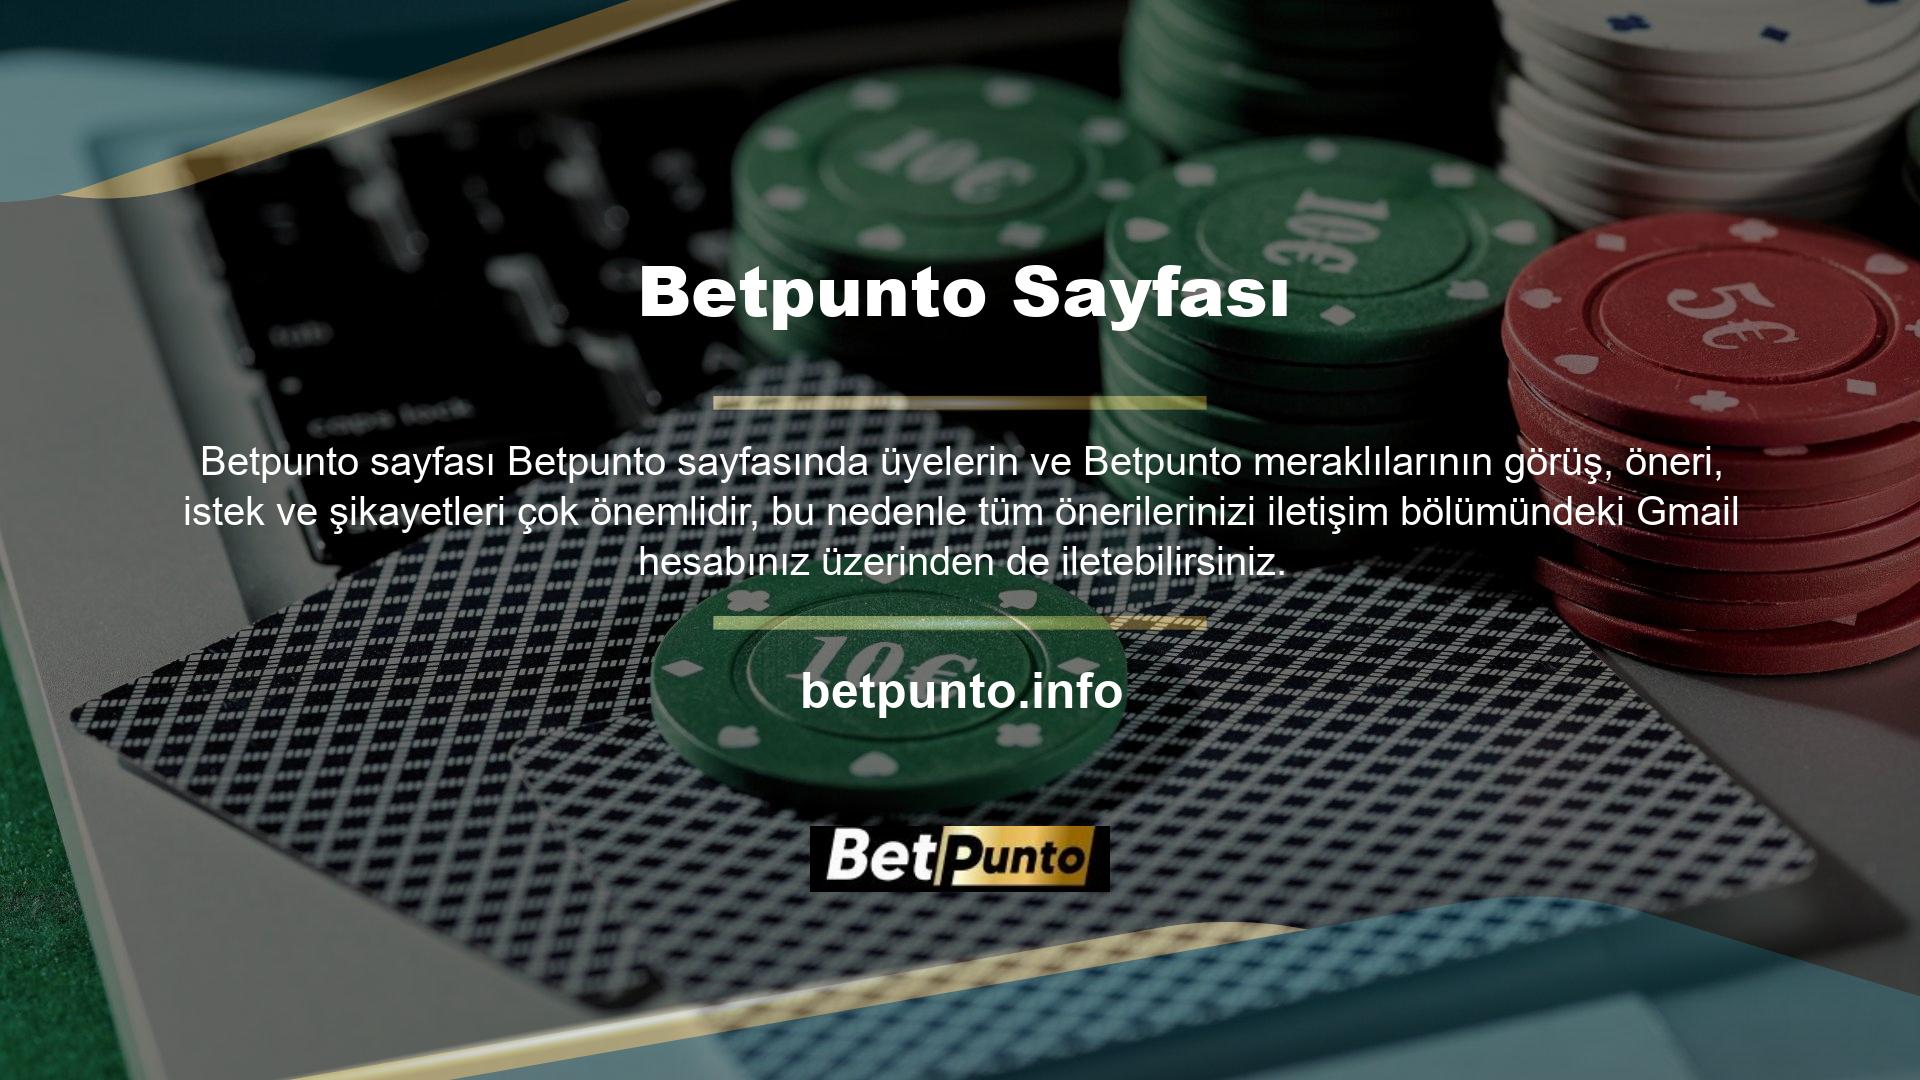 Betpunto para kazanmak isteyenlerin ilk tercihlerinden biri olan Betpunto web sitesi birbirinden farklı oyun çeşitleriyle müşterilerinin yüzünü güldürüyor